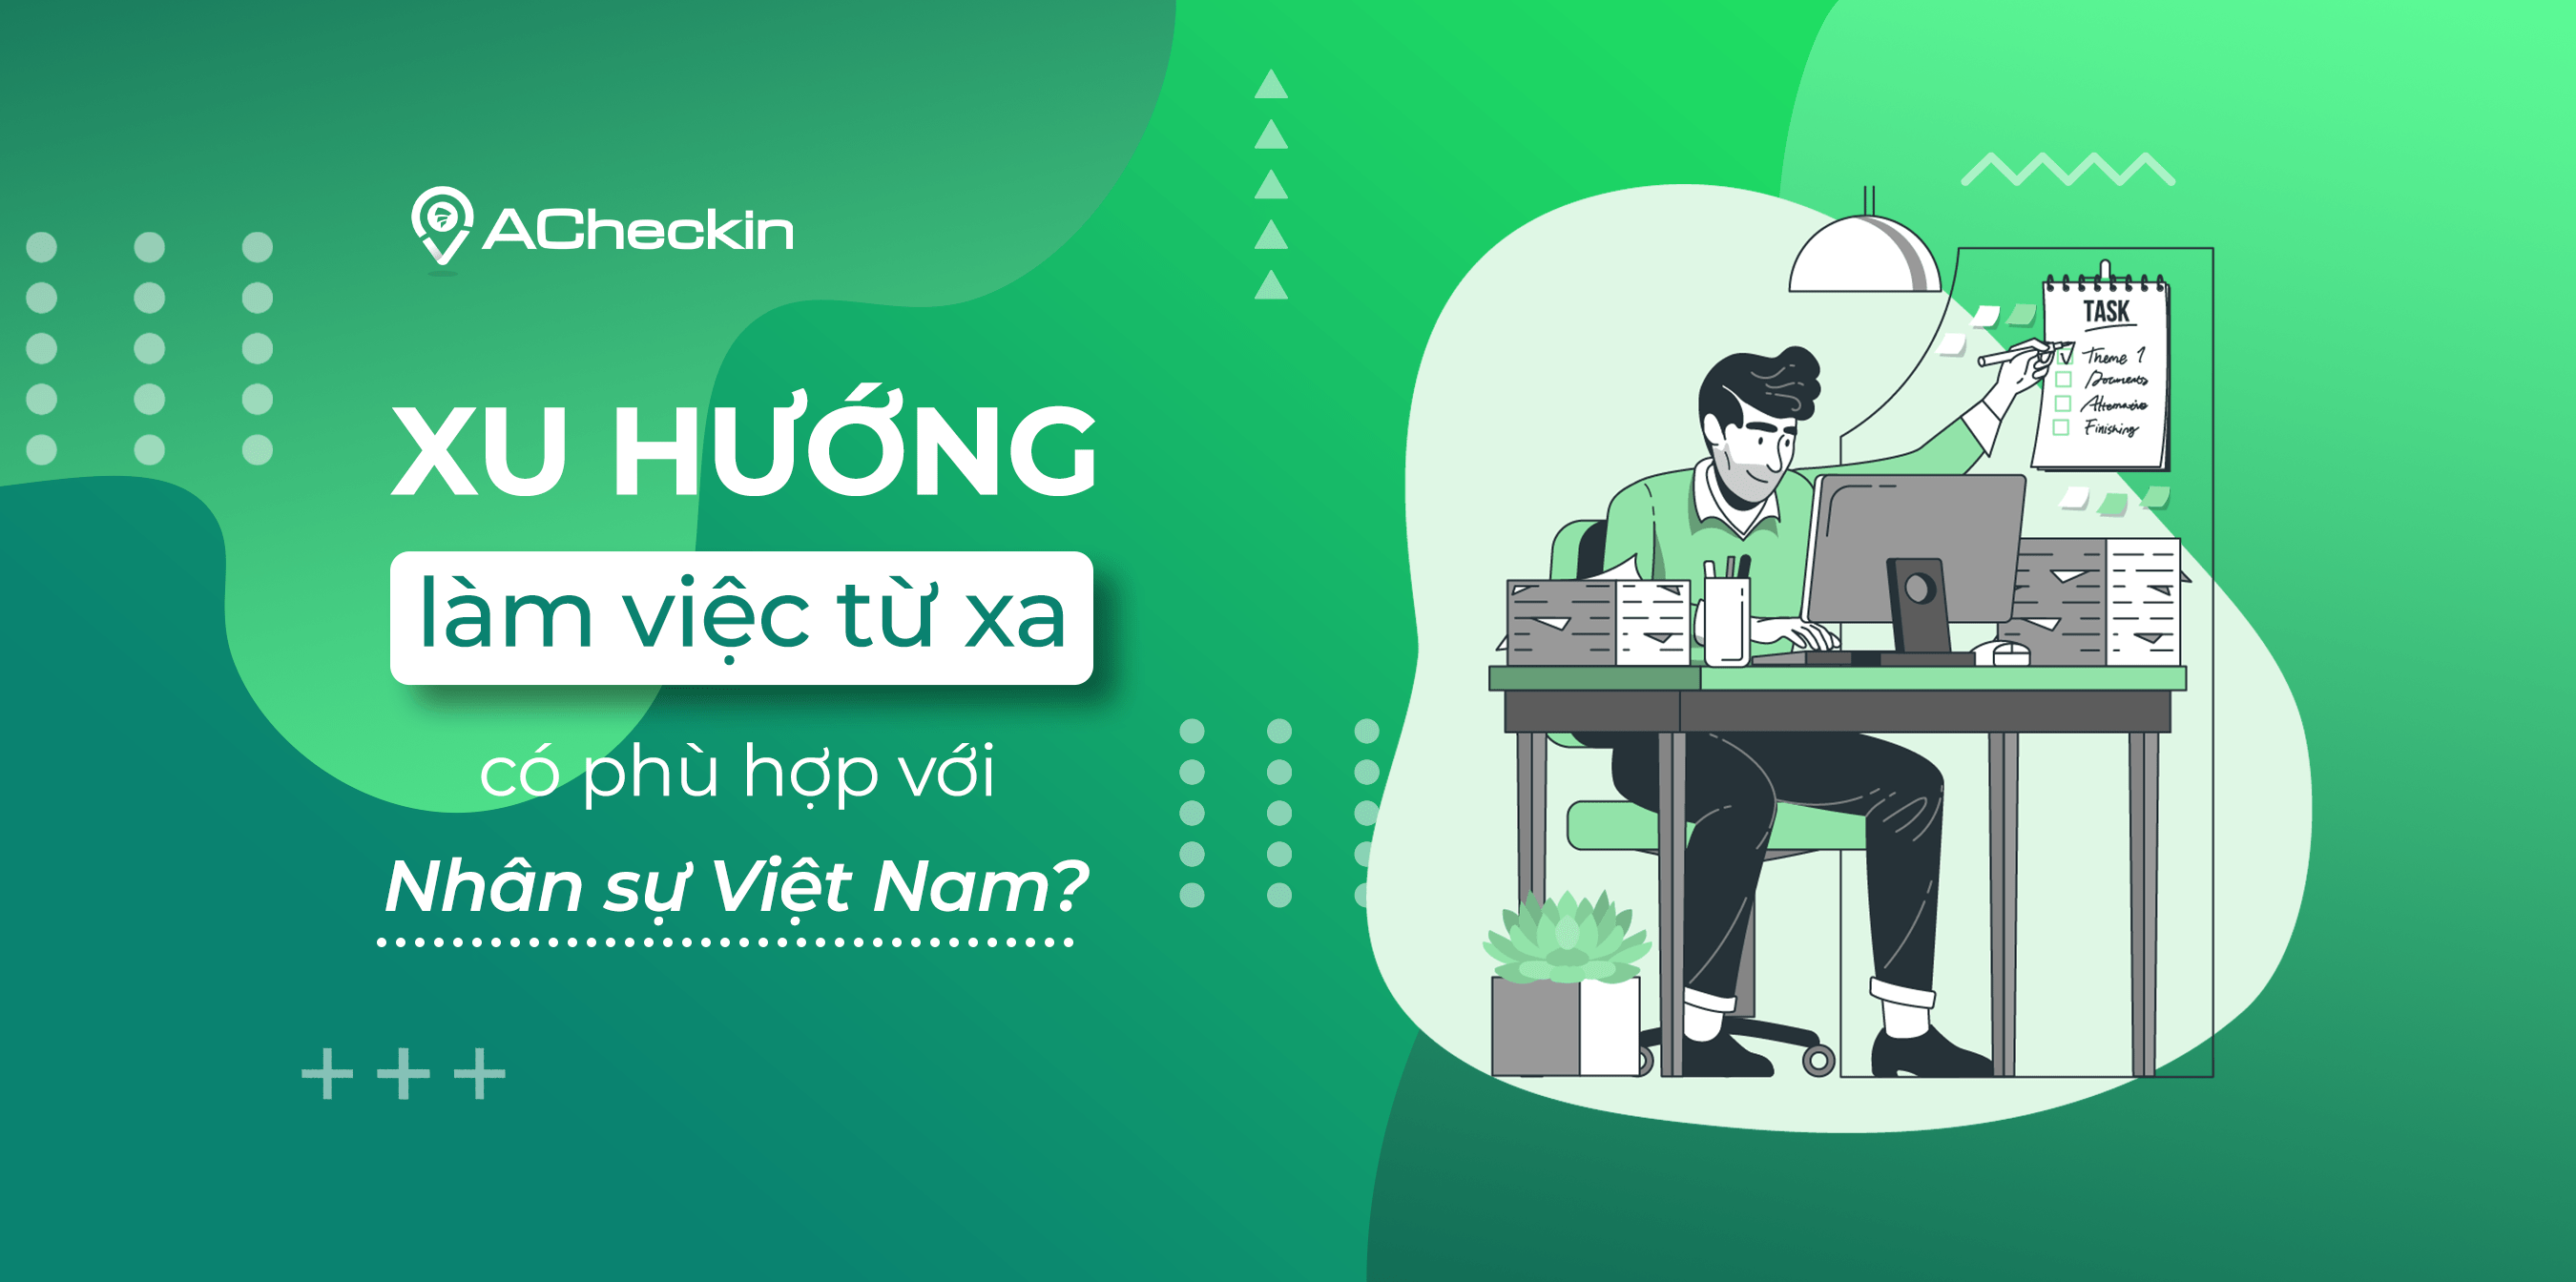 Xu hướng làm việc từ xa có phù hợp với lao động Việt Nam? - ACheckin blog